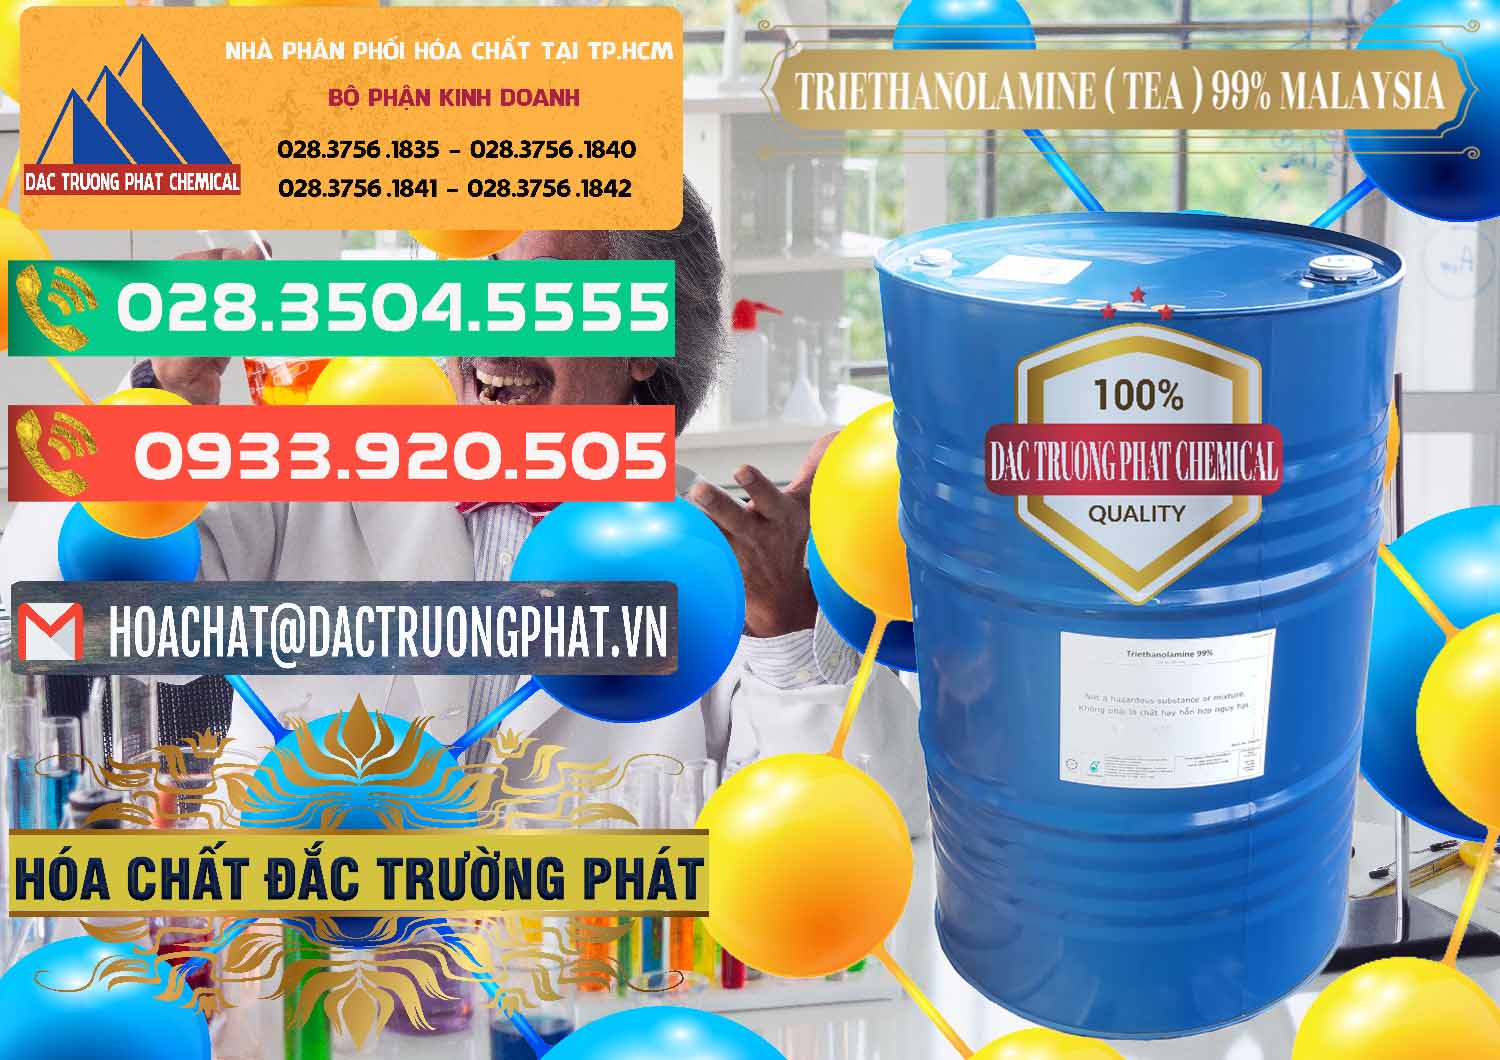 Nơi phân phối và bán TEA - Triethanolamine 99% Mã Lai Malaysia - 0323 - Cty nhập khẩu và phân phối hóa chất tại TP.HCM - congtyhoachat.com.vn